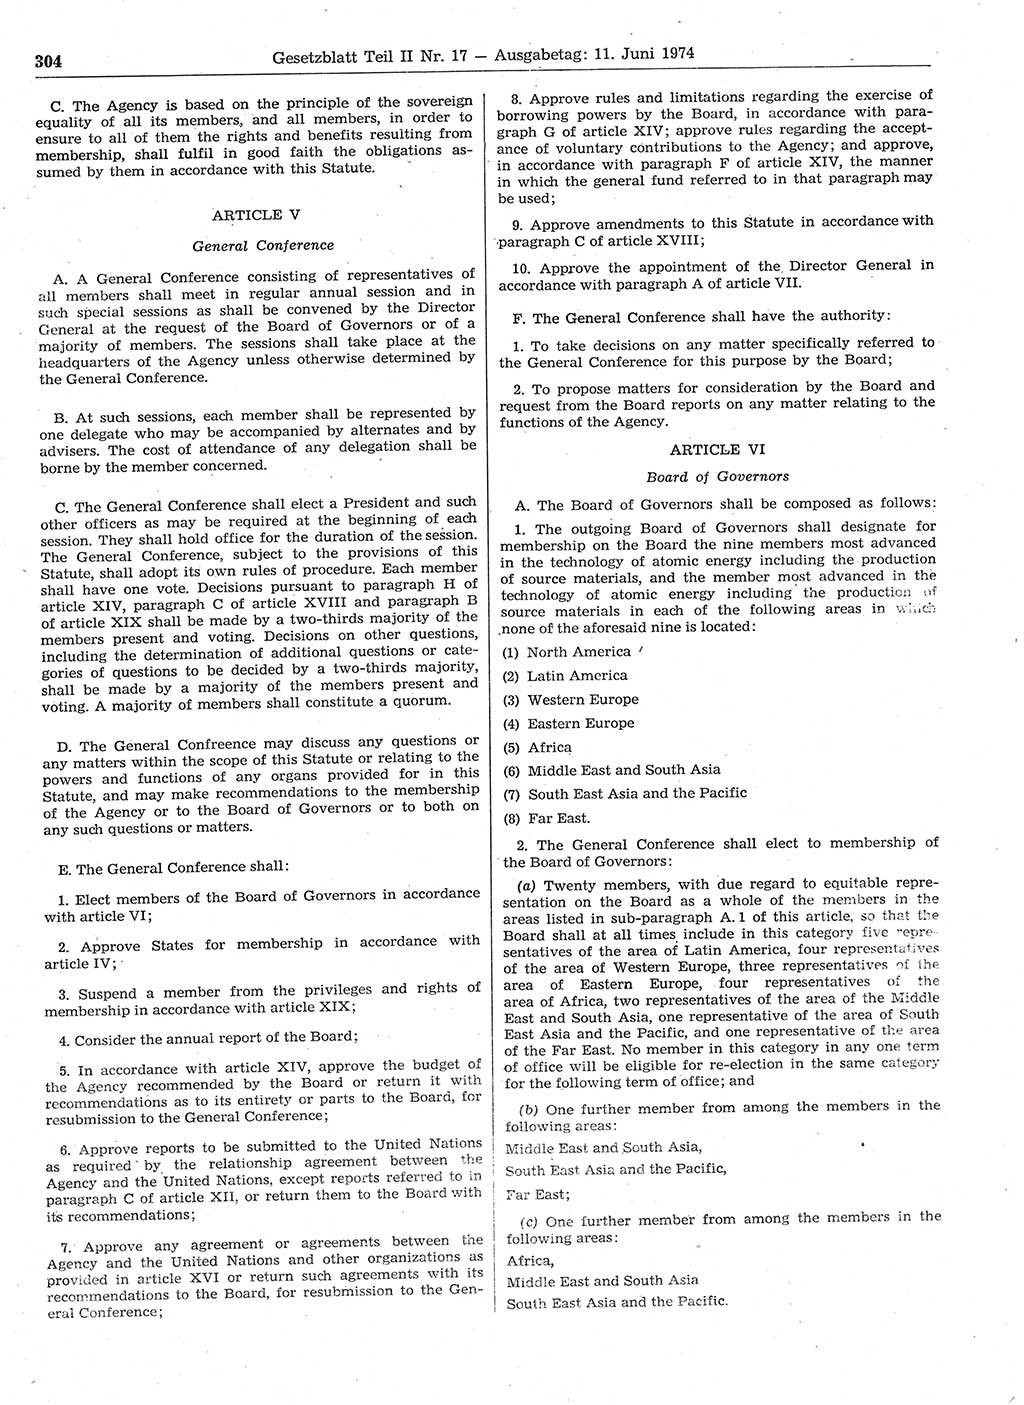 Gesetzblatt (GBl.) der Deutschen Demokratischen Republik (DDR) Teil ⅠⅠ 1974, Seite 304 (GBl. DDR ⅠⅠ 1974, S. 304)